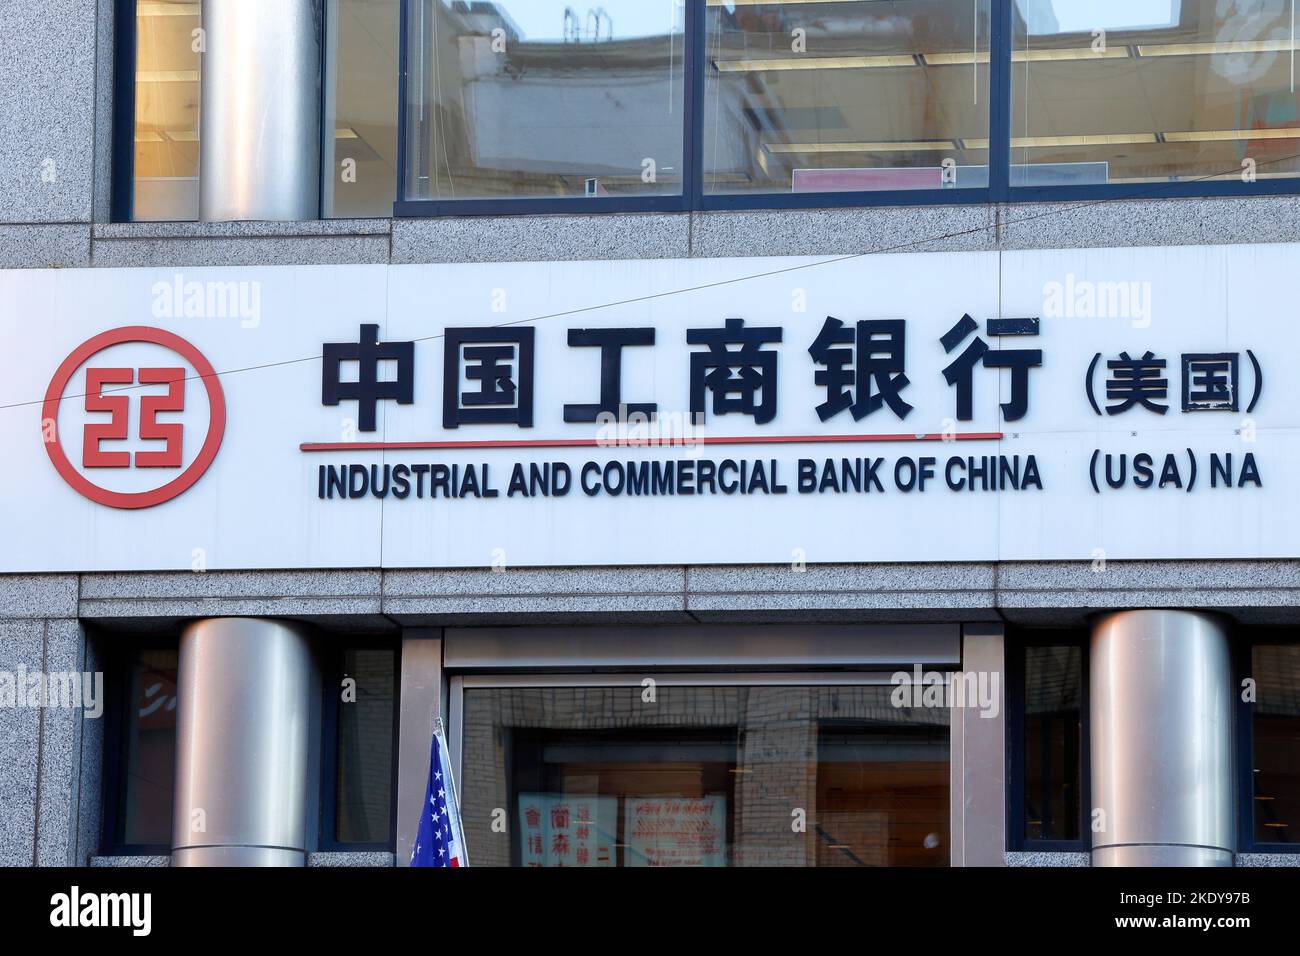 Beschilderung für die Industrial and Commercial Bank of China 中國工商銀行 am Hauptsitz in New York Chinatown. ICBC ist die größte Bank der Welt Stockfoto